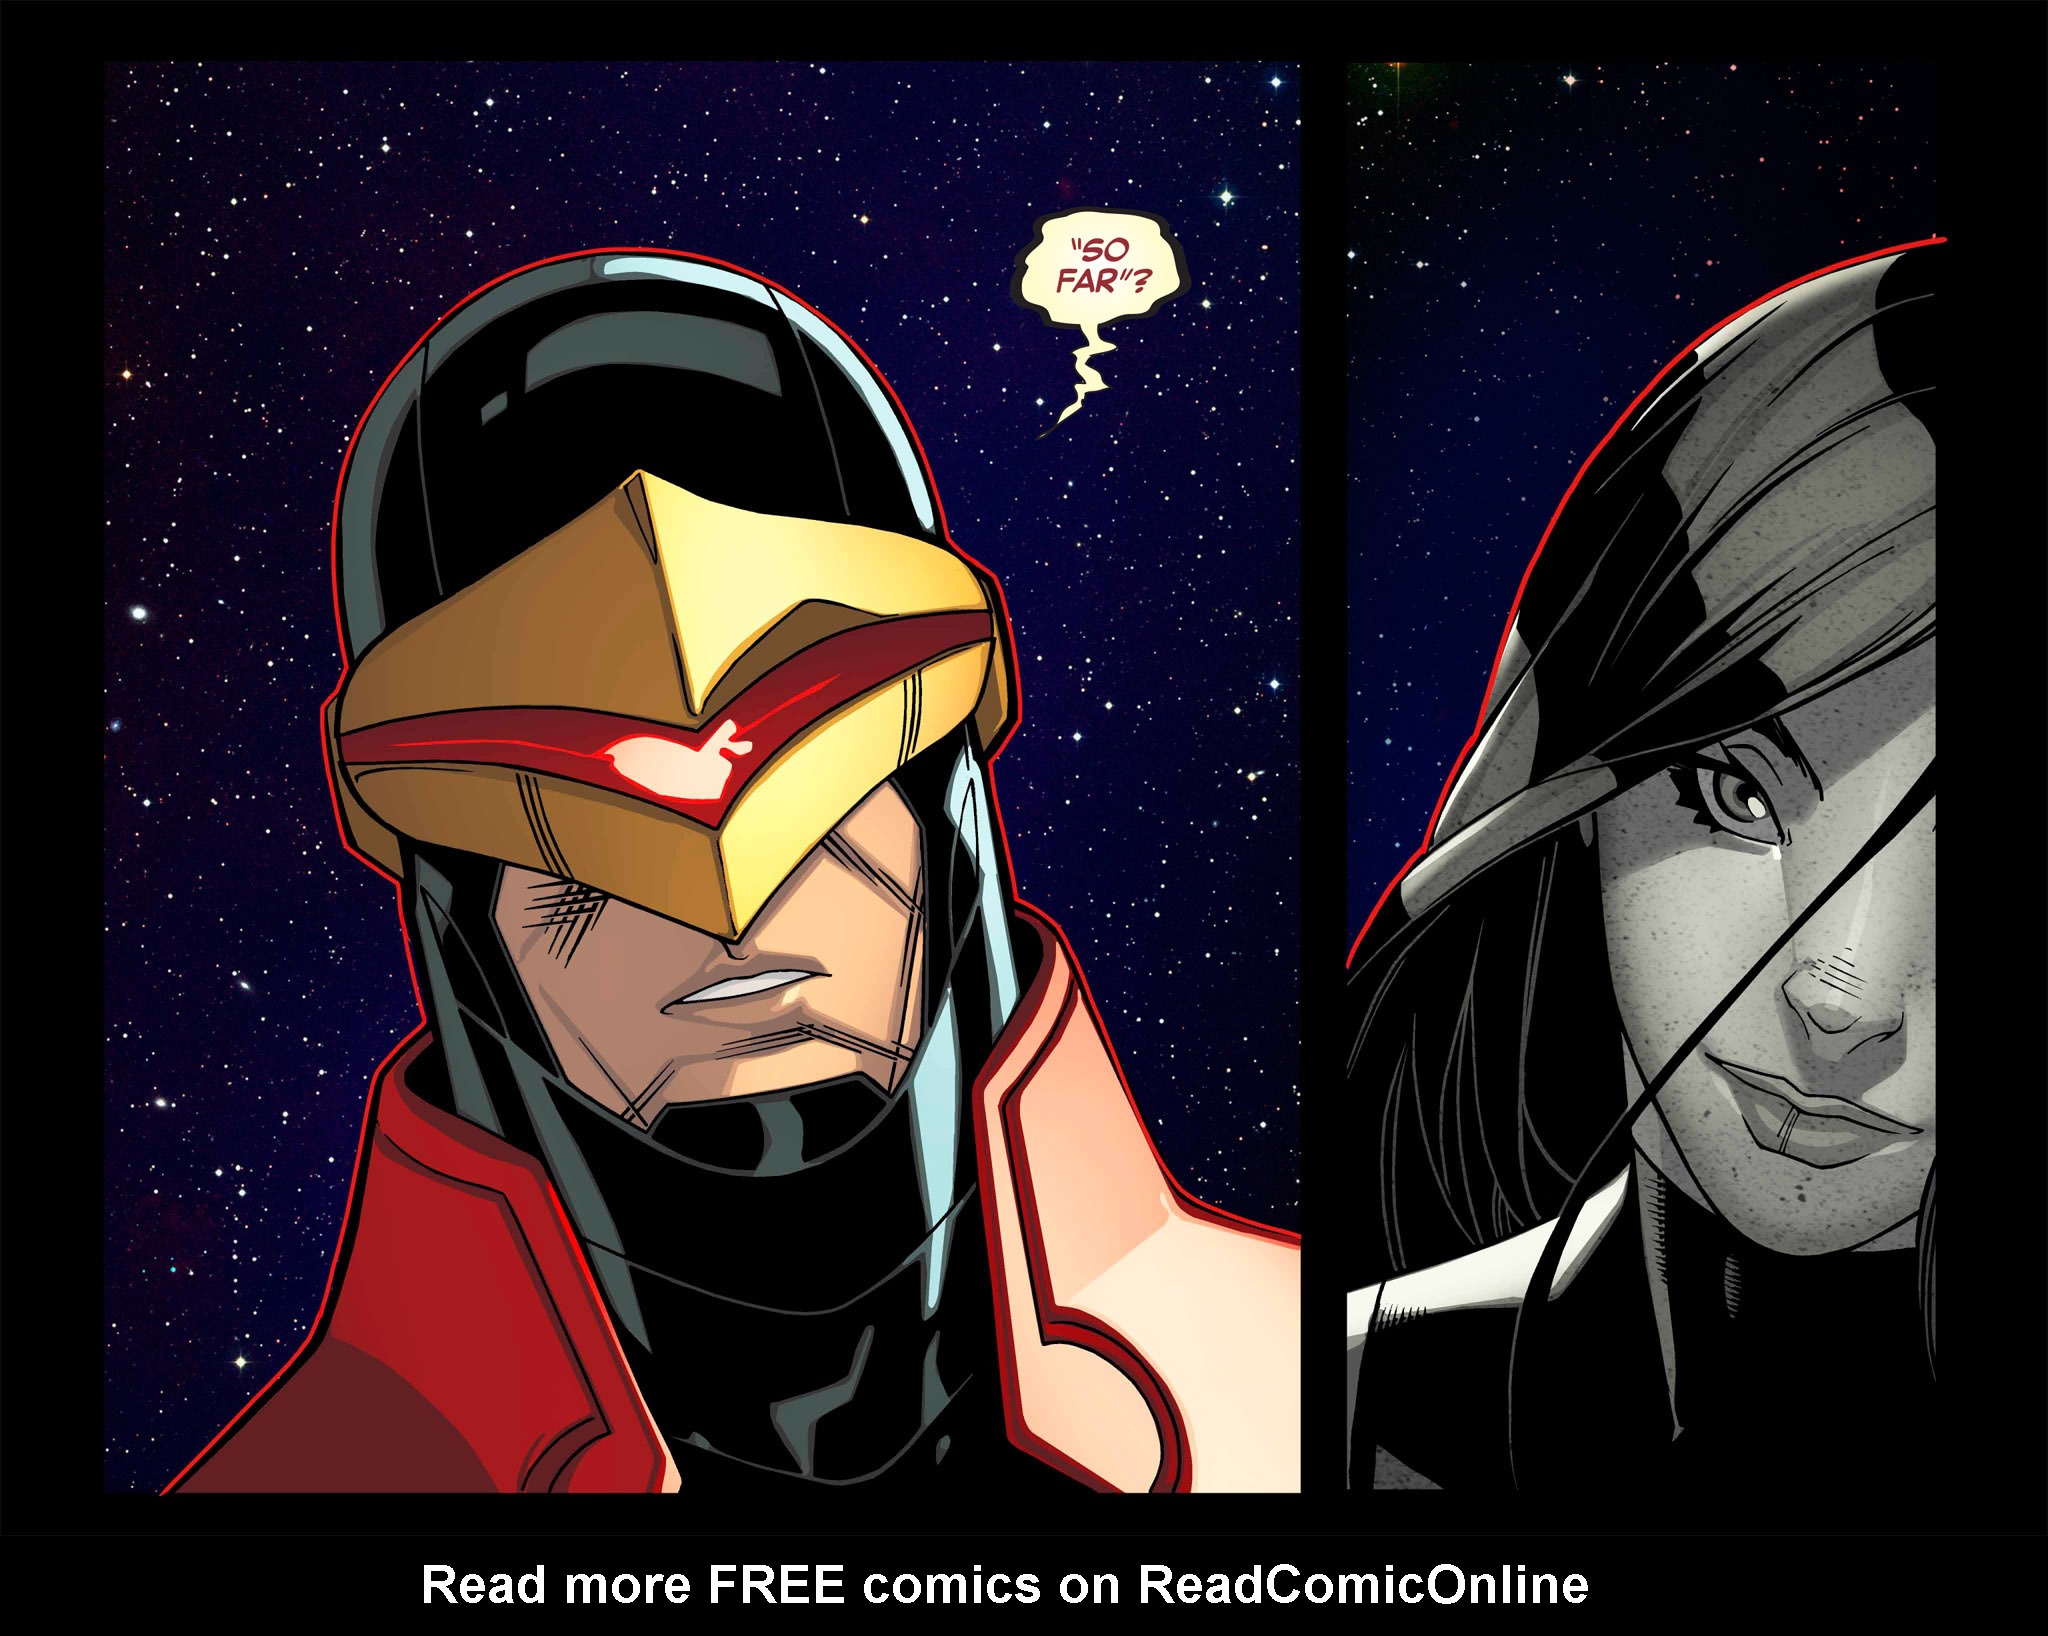 Read online Avengers vs. X-Men: Infinite comic -  Issue #6 - 42